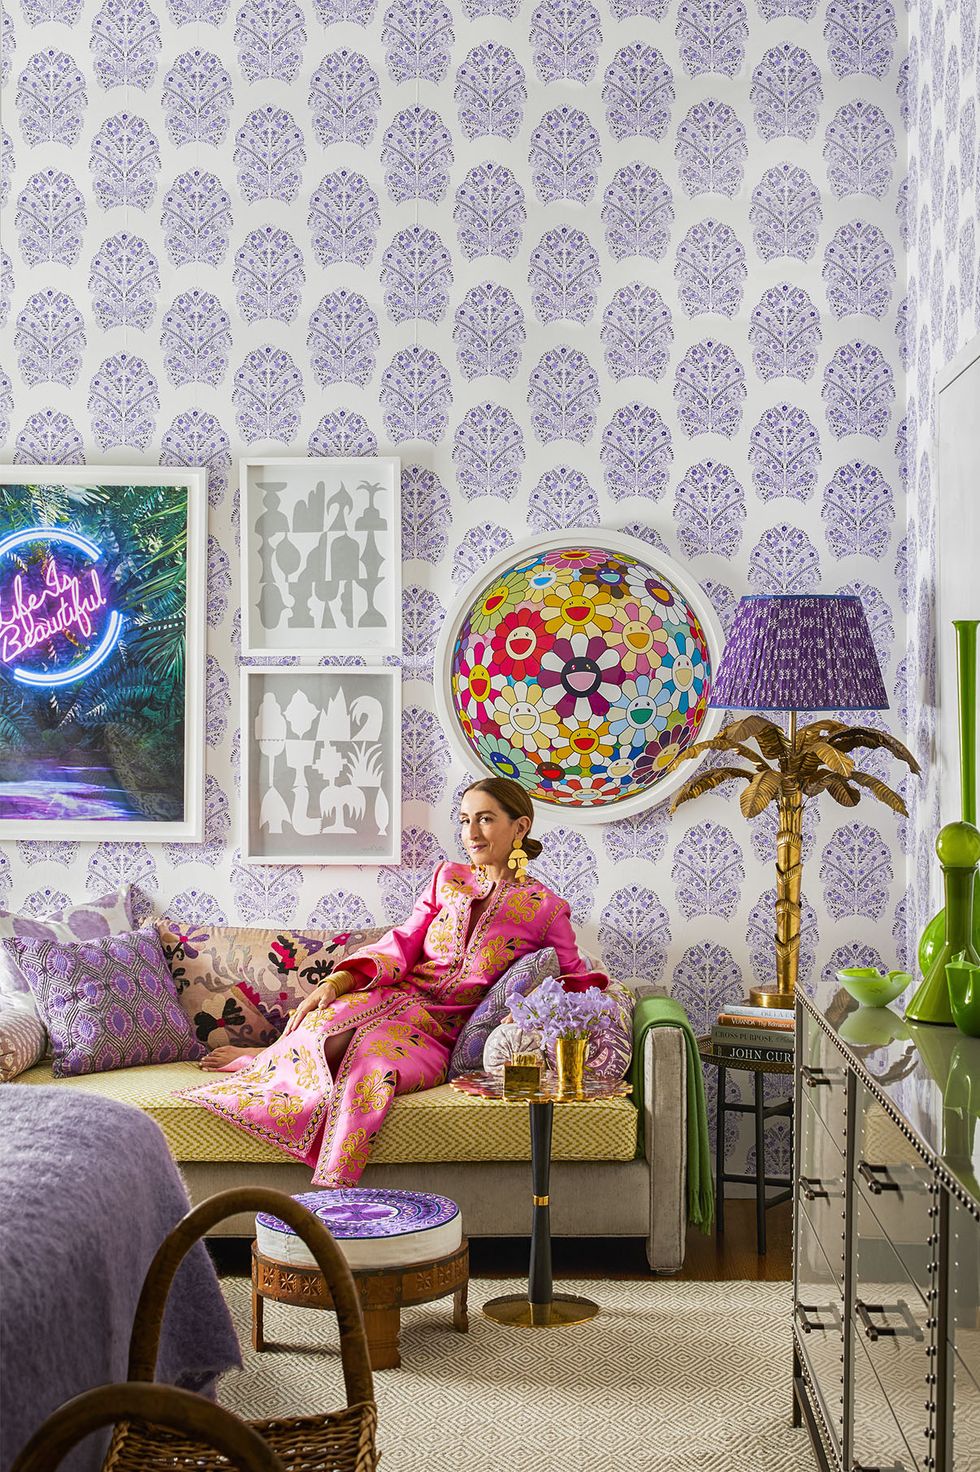 NTK thời trang Christina Juarez đang thả dáng tại phòng khách trong căn hộ của mình. Căn phòng rực rỡ sắc màu từ nội thất đến phụ kiện, hấp dẫn nhất có lẽ là giấy dán tường hoa văn tím trắng cùng một loại điểm nhấn trang trí đồng màu xung quanh.